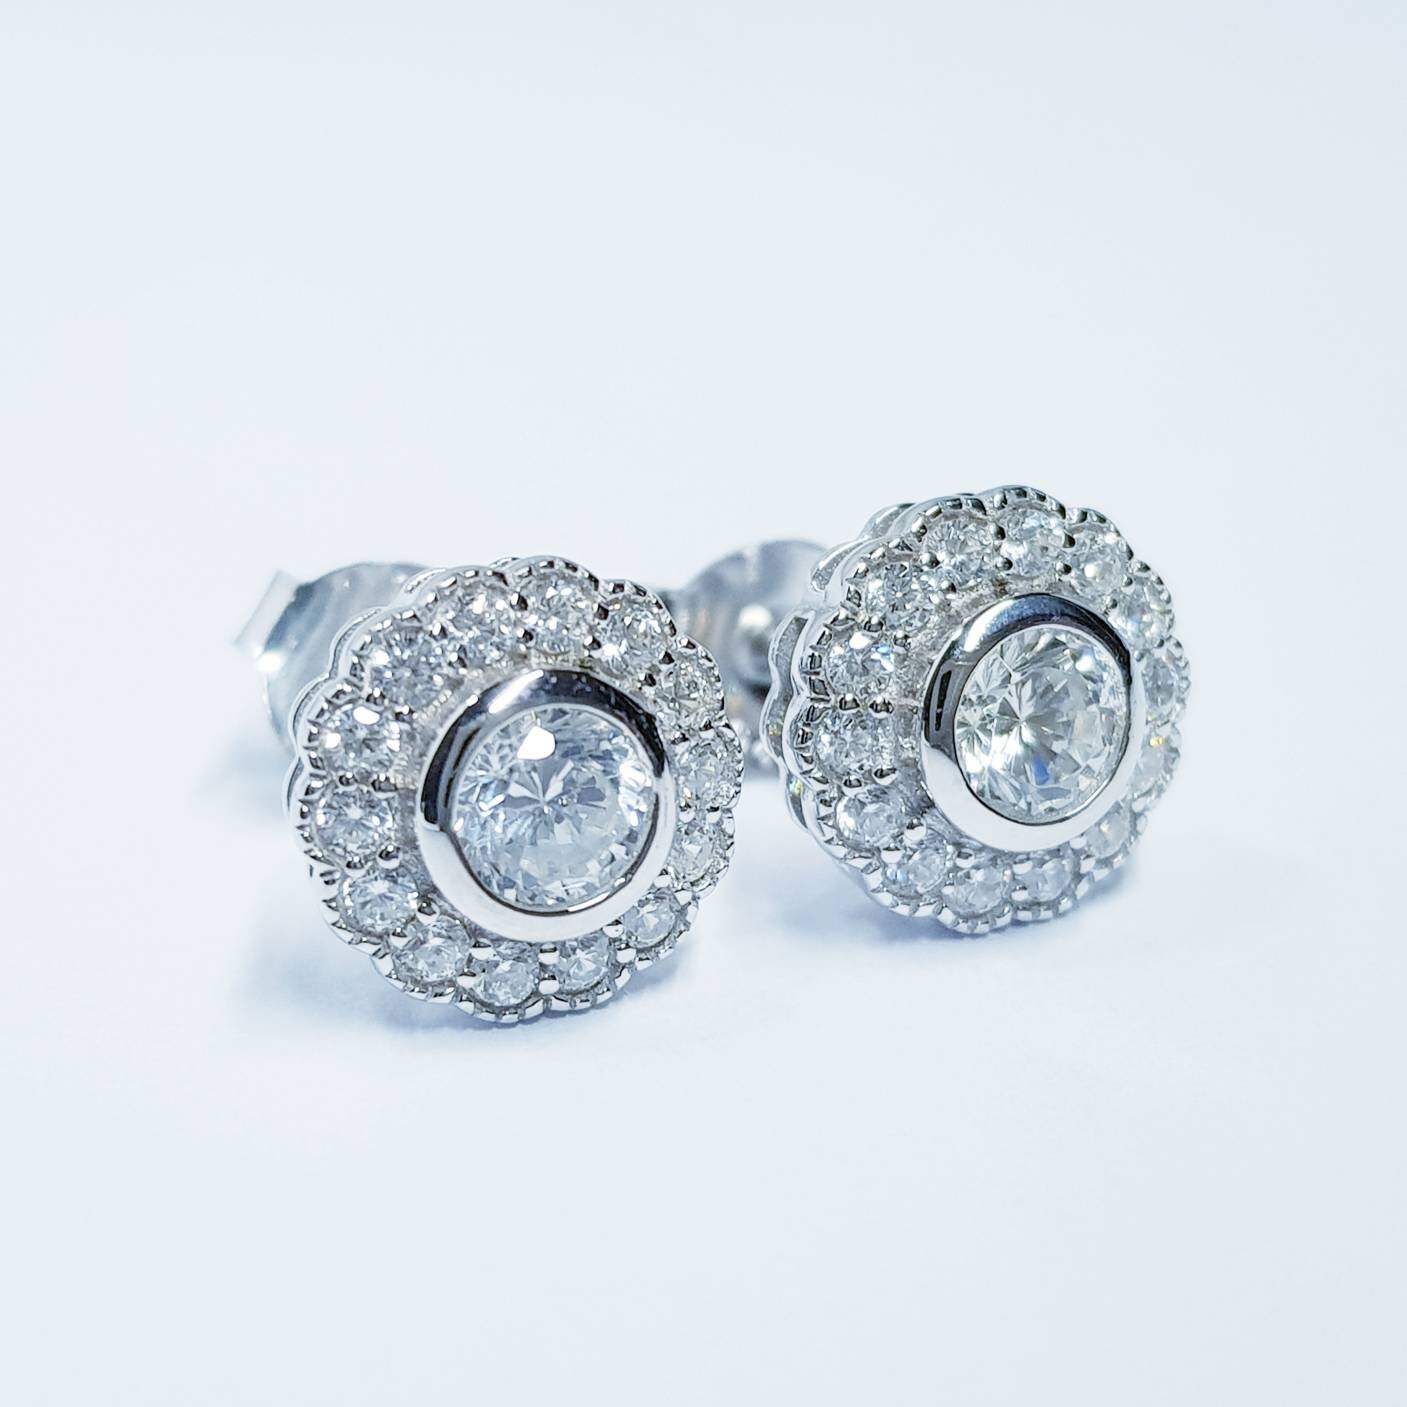 Antique style Halo Earrings, stud earrings, gifts for women, Bridal Jewelry, earrings for women, classic stud earrings